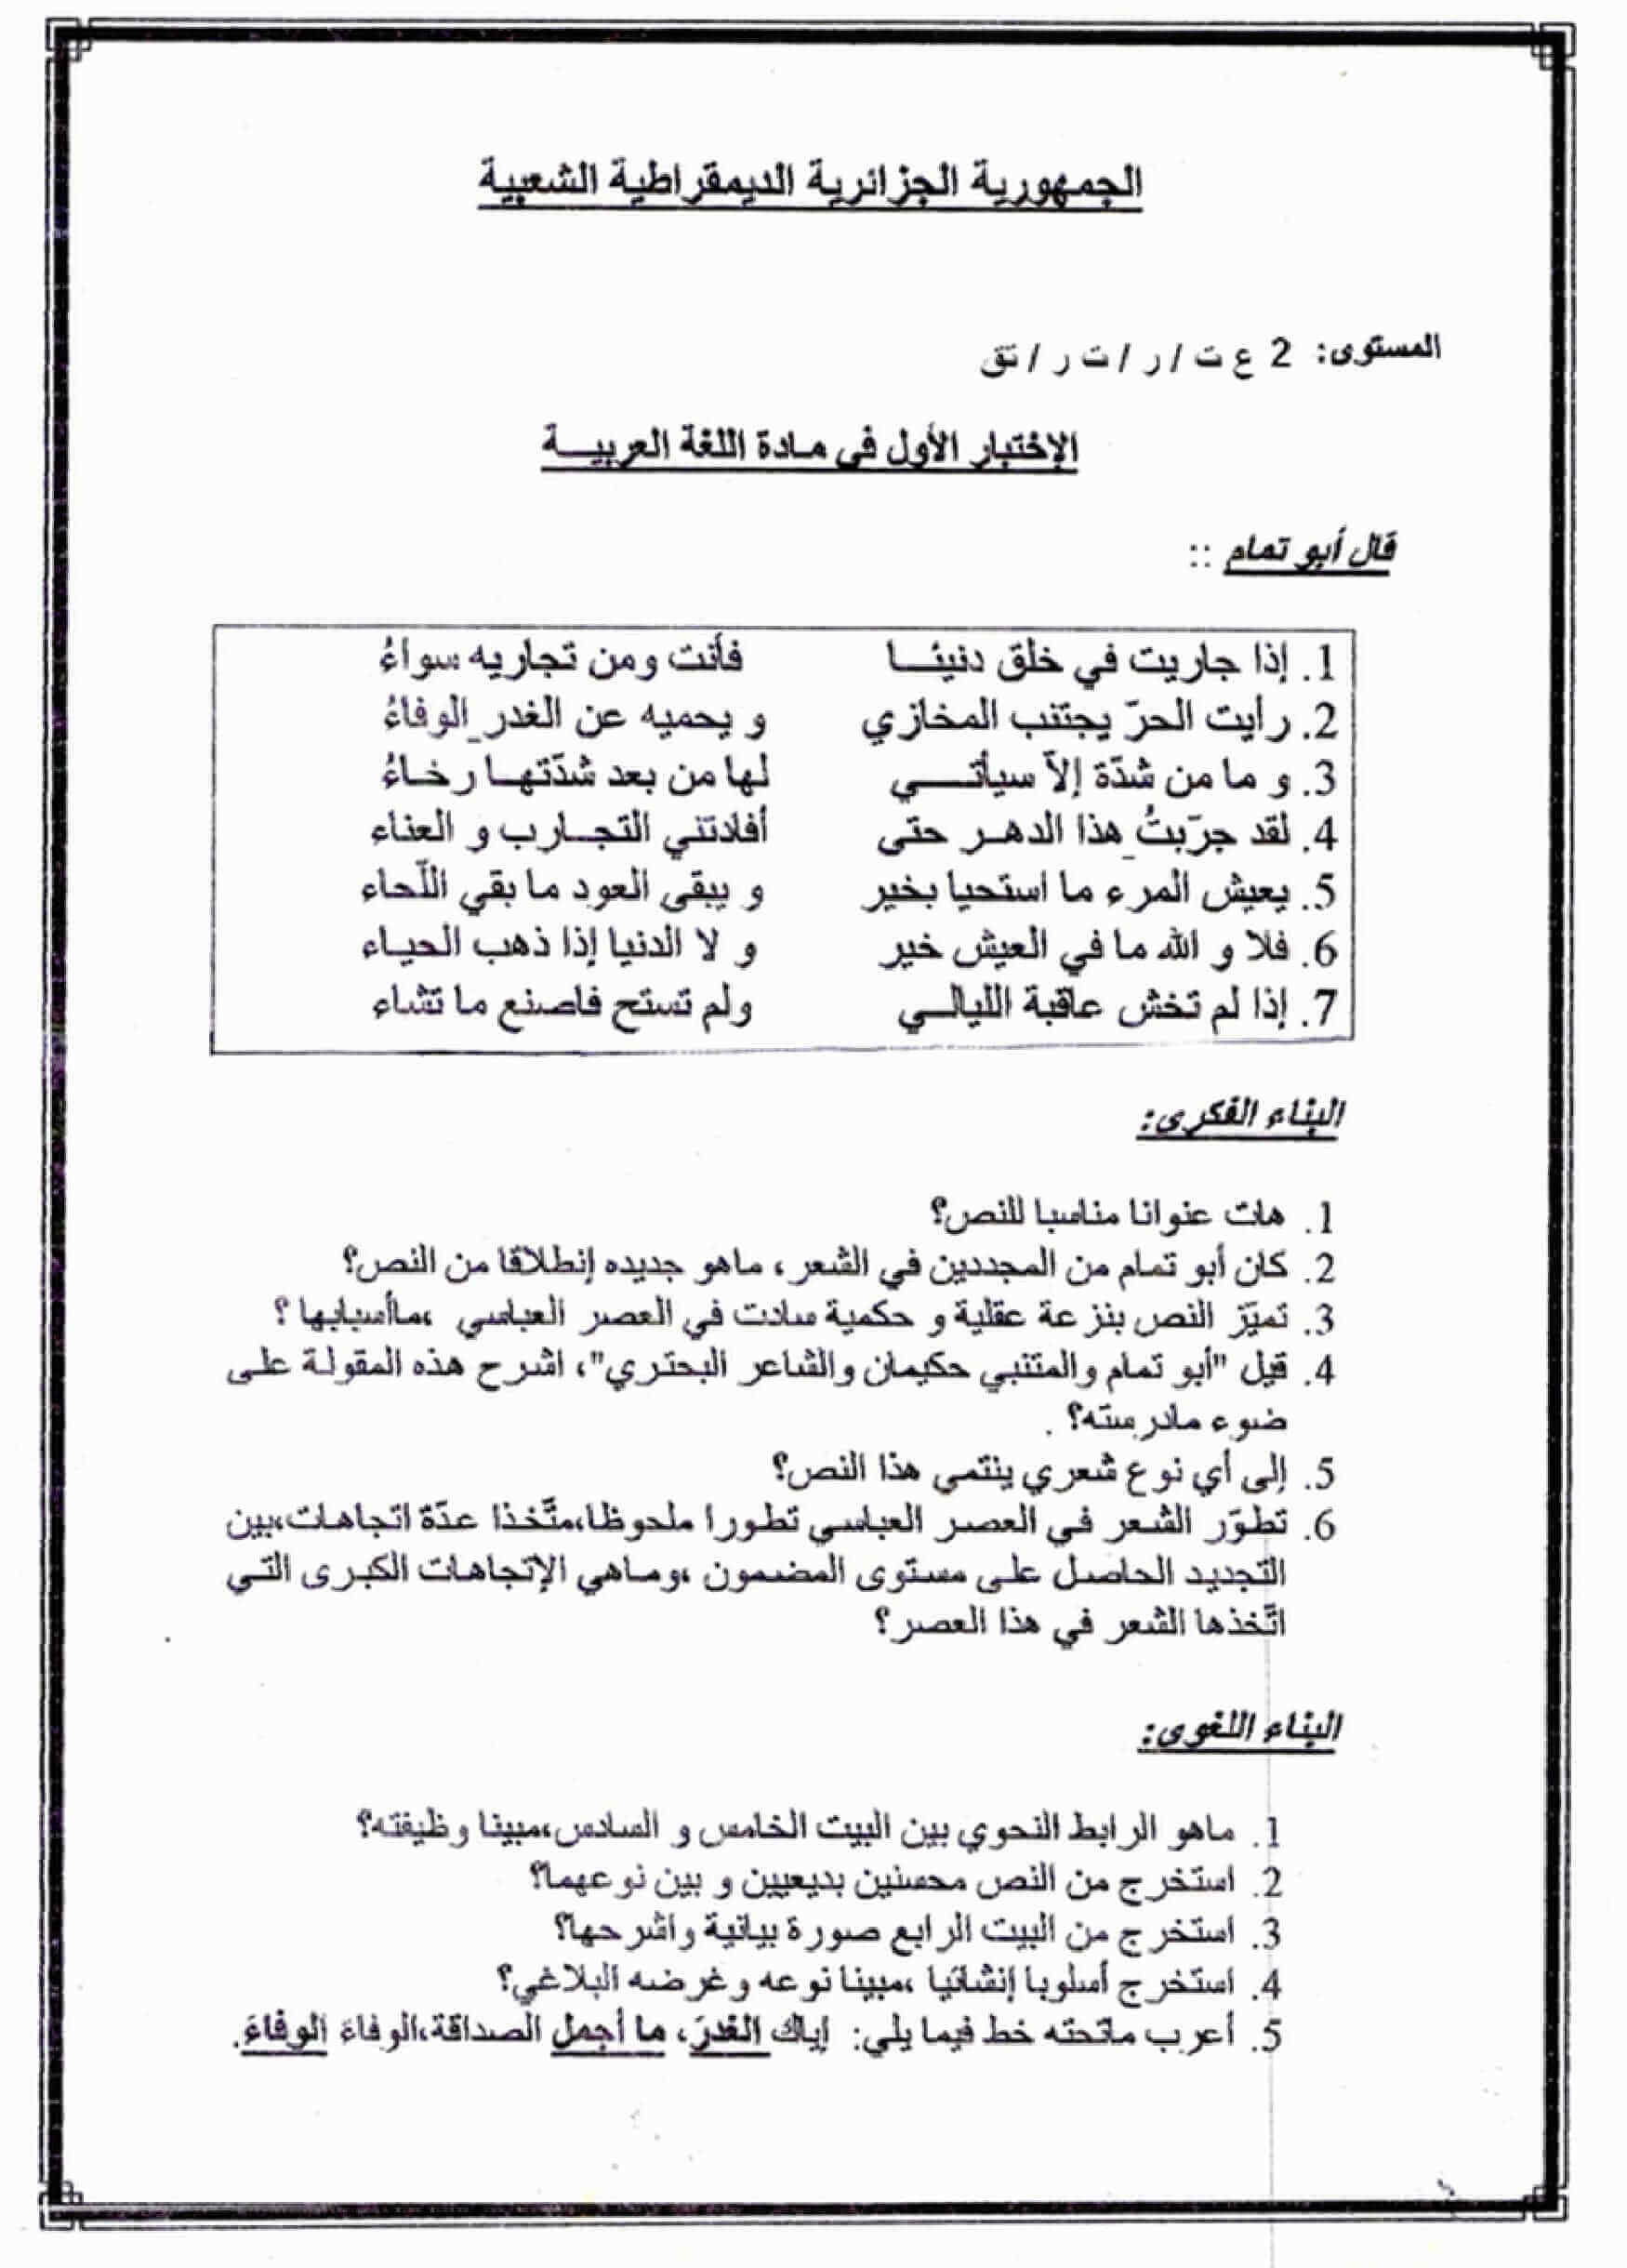 اختبار الفصل الأول في اللغة العربية للسنة ثانية ثانوي النموذج 9